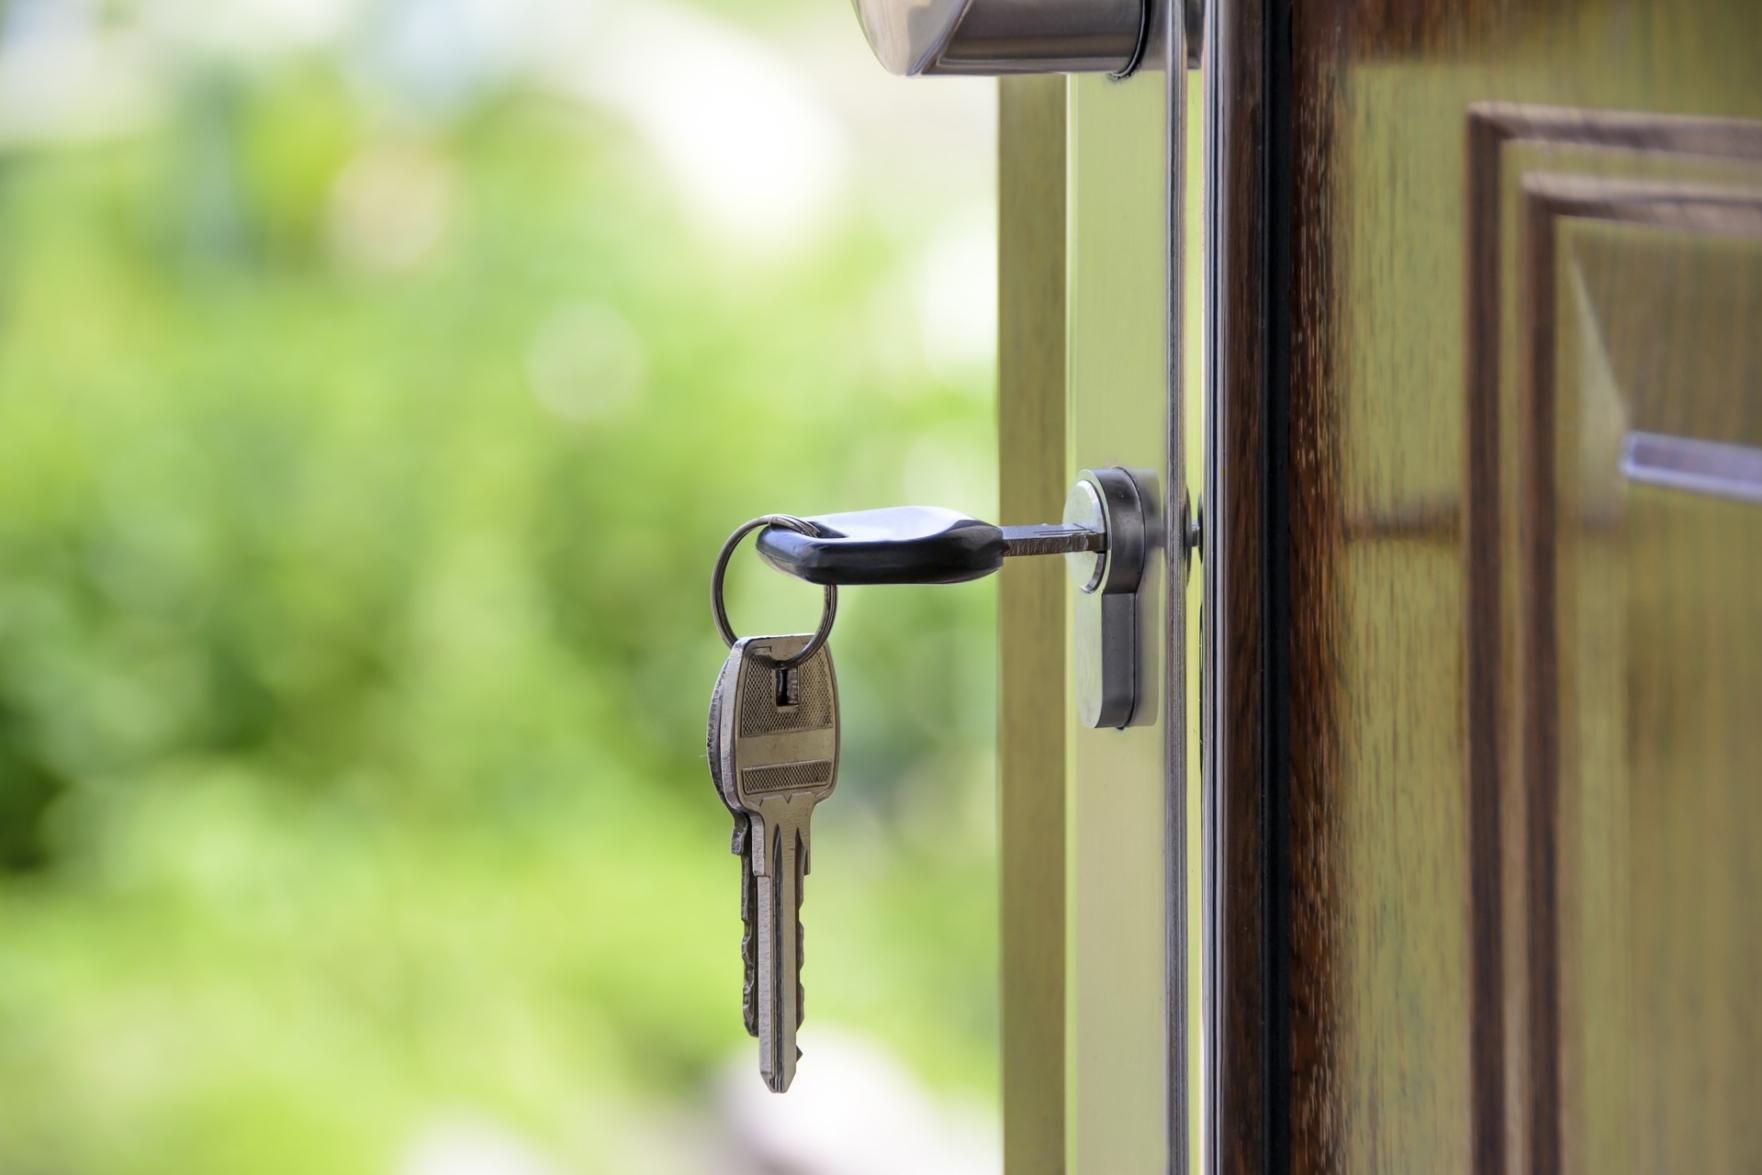 Preço de venda dos imóveis residenciais sobe 0,26% em fevereiro, diz FipeZap, Economia